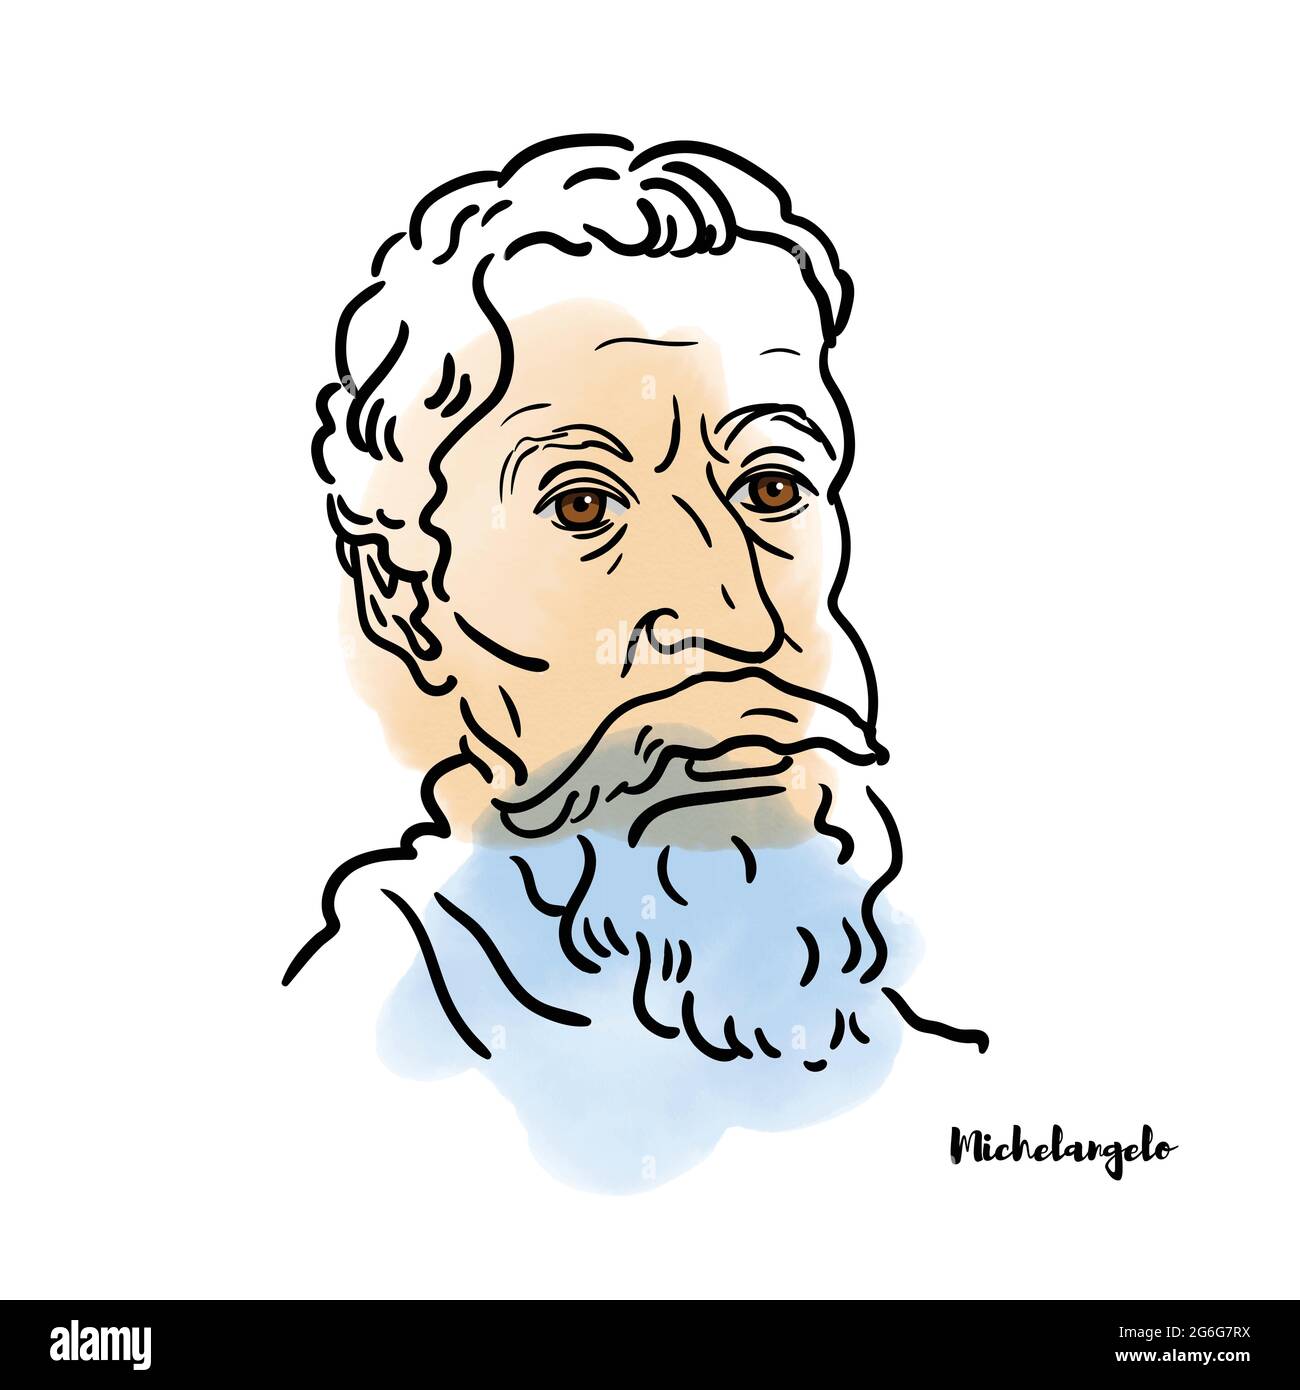 Berühmter Künstler Michelangelo Vektor handgezeichnetes Aquarell-Porträt mit Tintenkonturen. Italienischer Bildhauer, Maler, Architekt und Dichter der Hohen Renaissance Stock Vektor